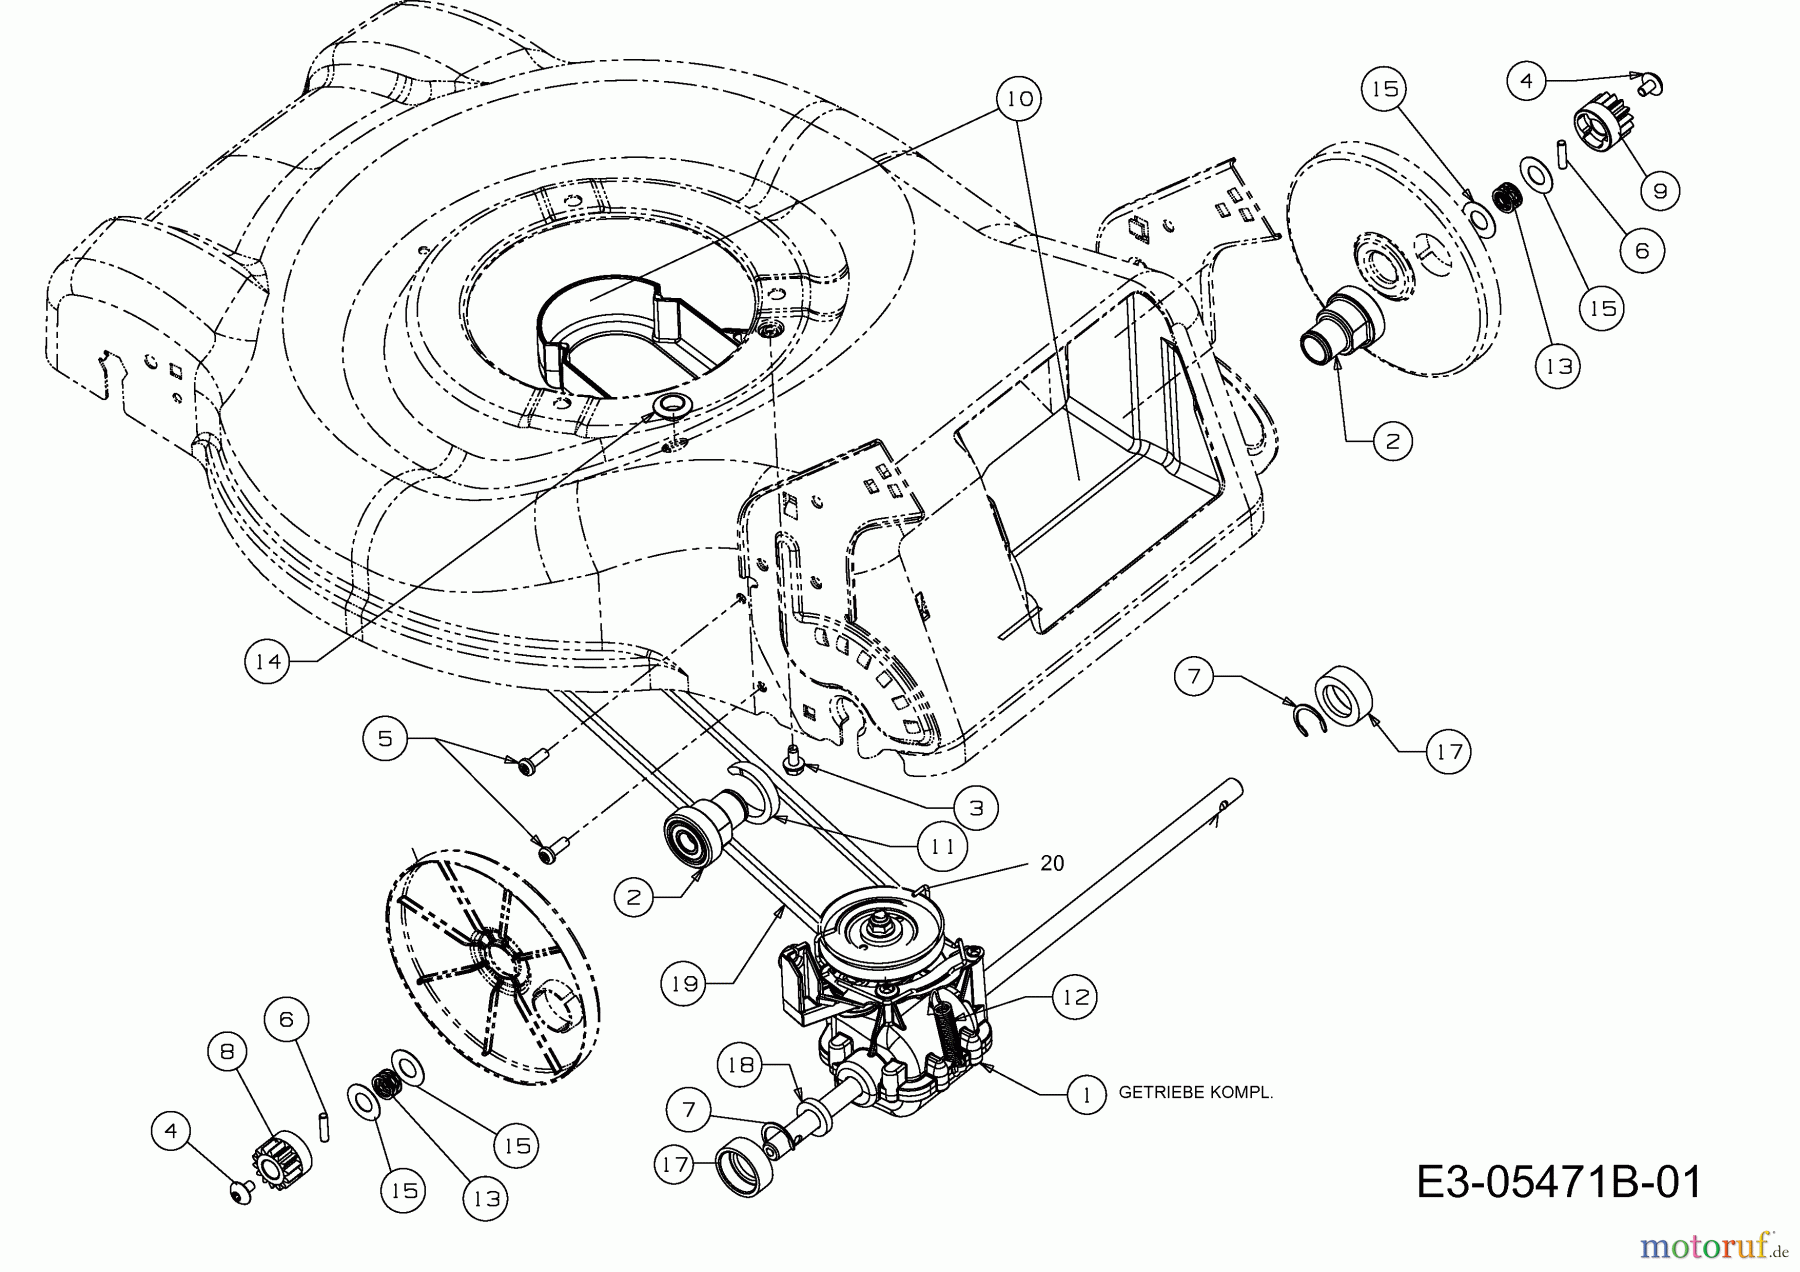  Wolf-Garten Motormäher mit Antrieb Ambition 46 AB 12A-J55G650  (2013) Getriebe